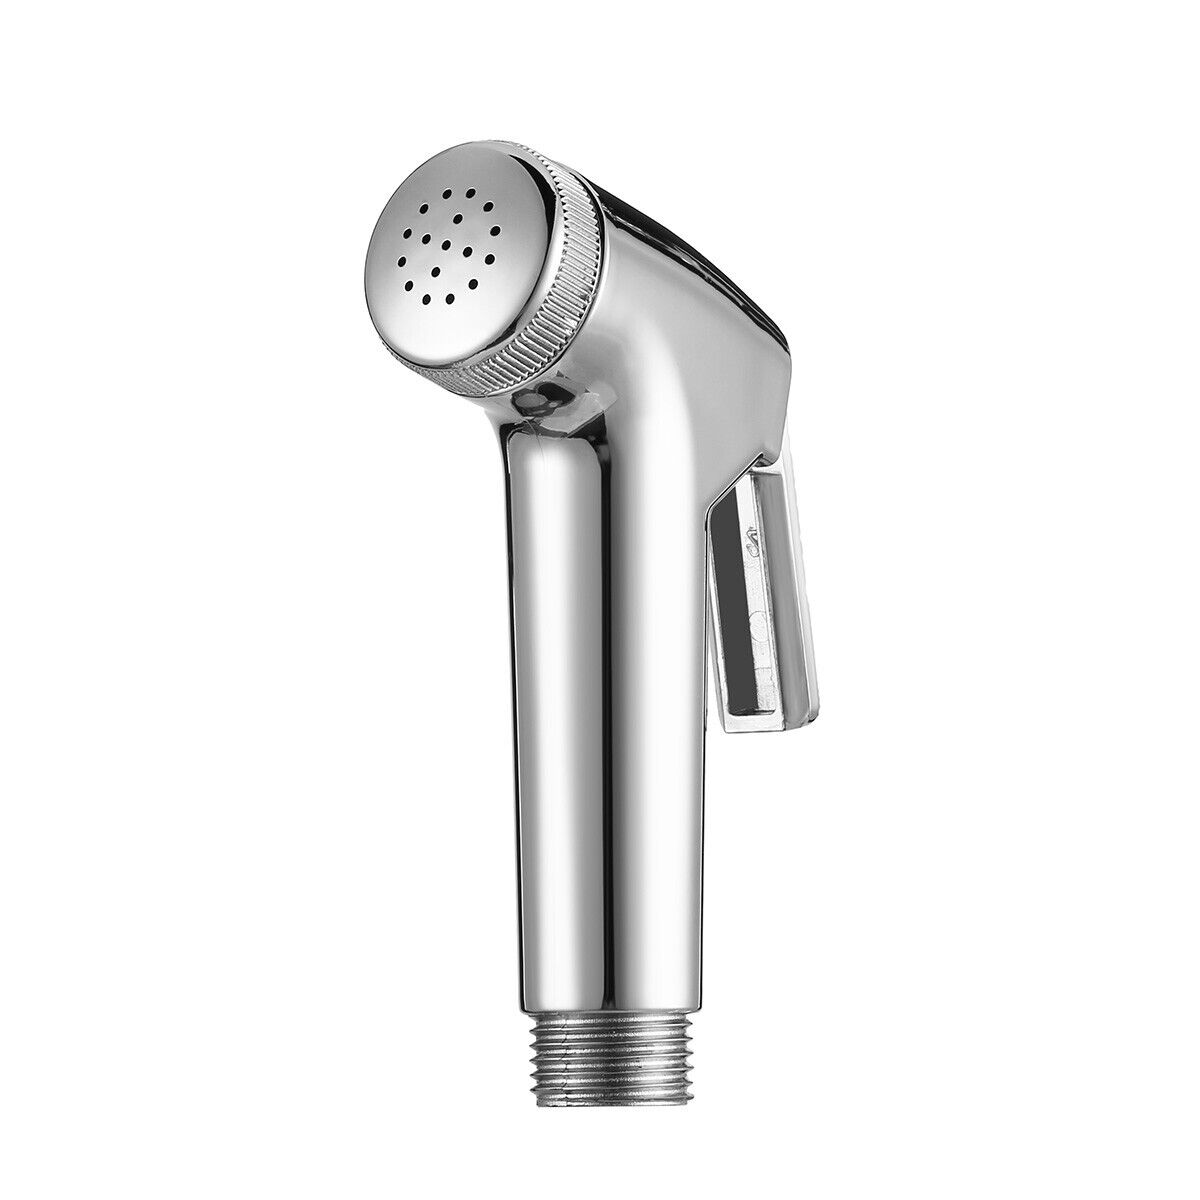 Handheld Bidet Toilet Sprayer Kit Bathroom Shower Water Spray Head with Hose Unbranded Toilet Bidet Shower - фотография #10